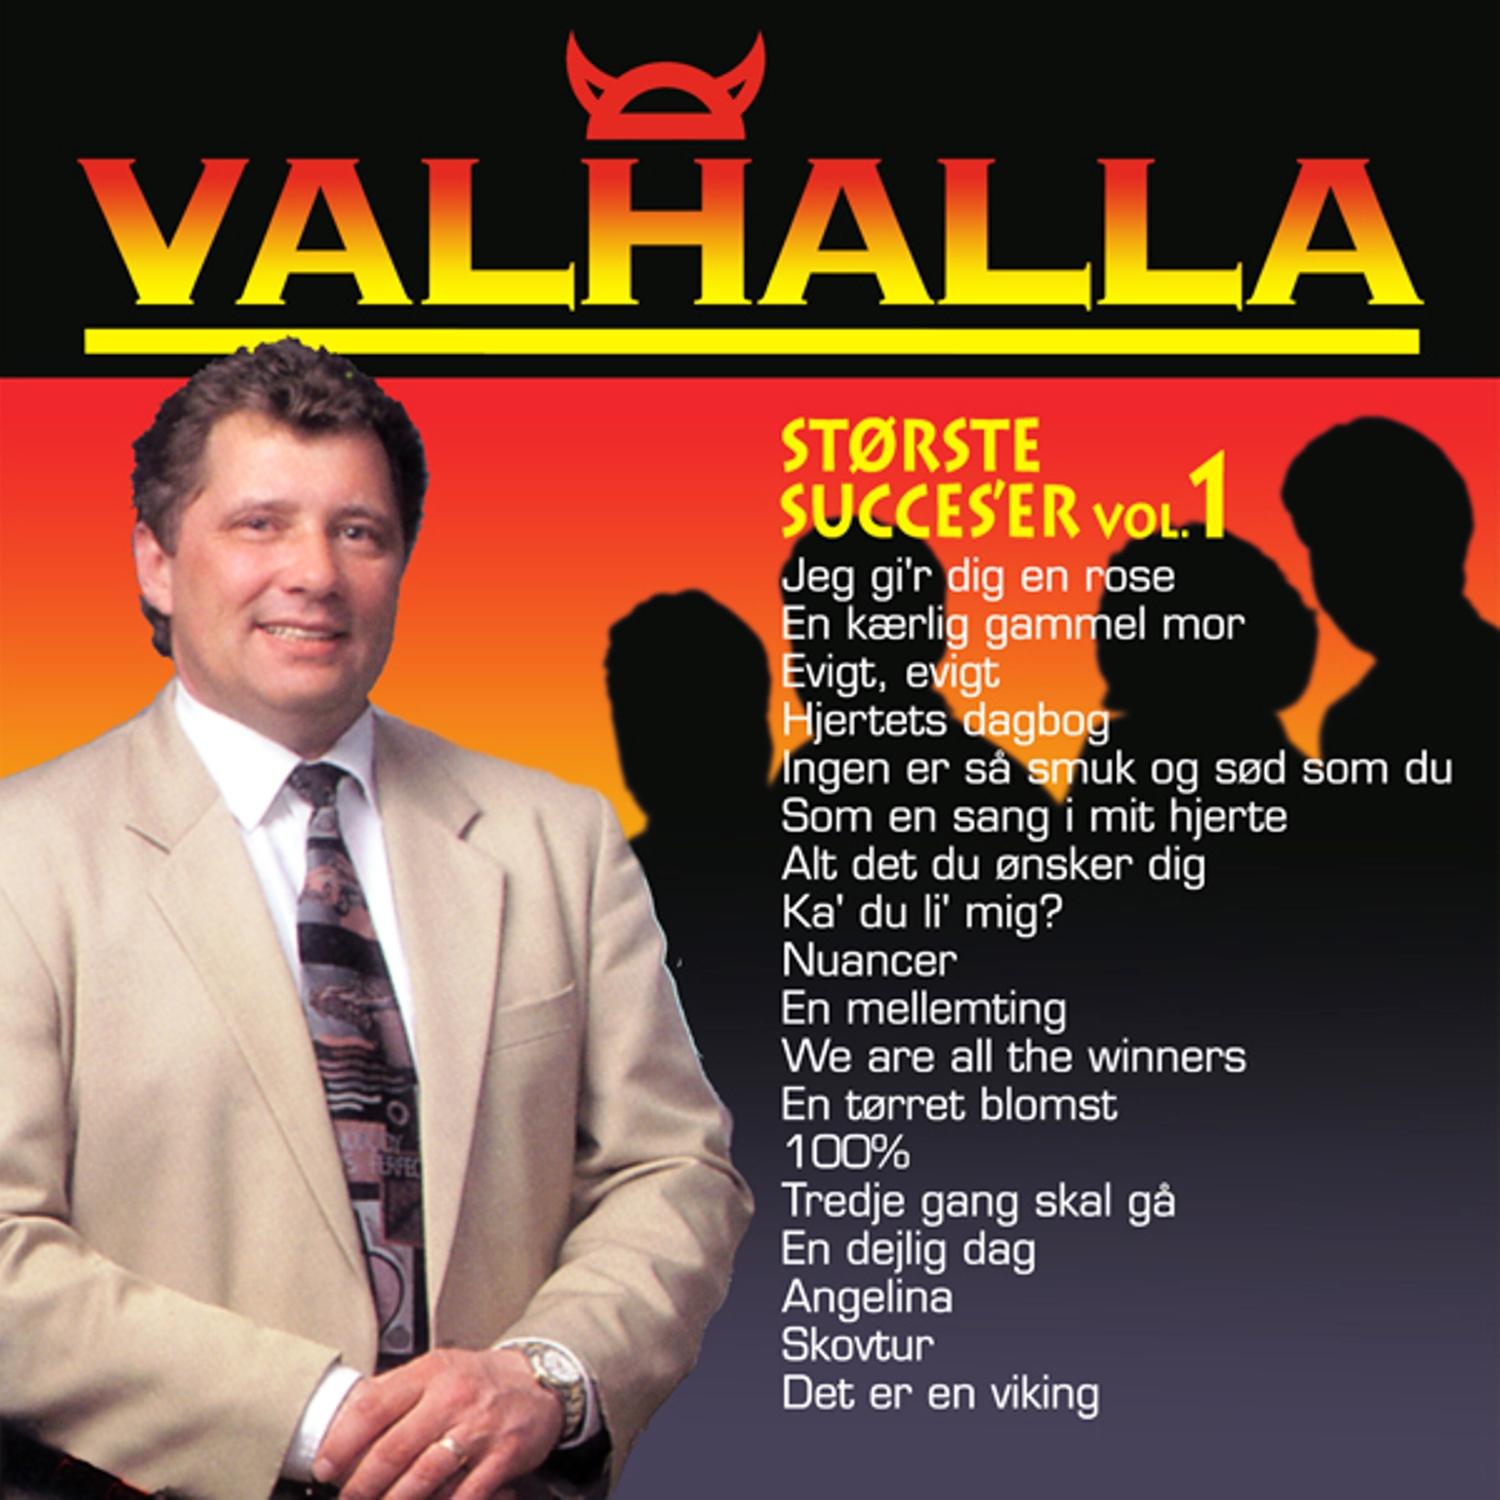 Valhalla - Alt det du ønsker dig